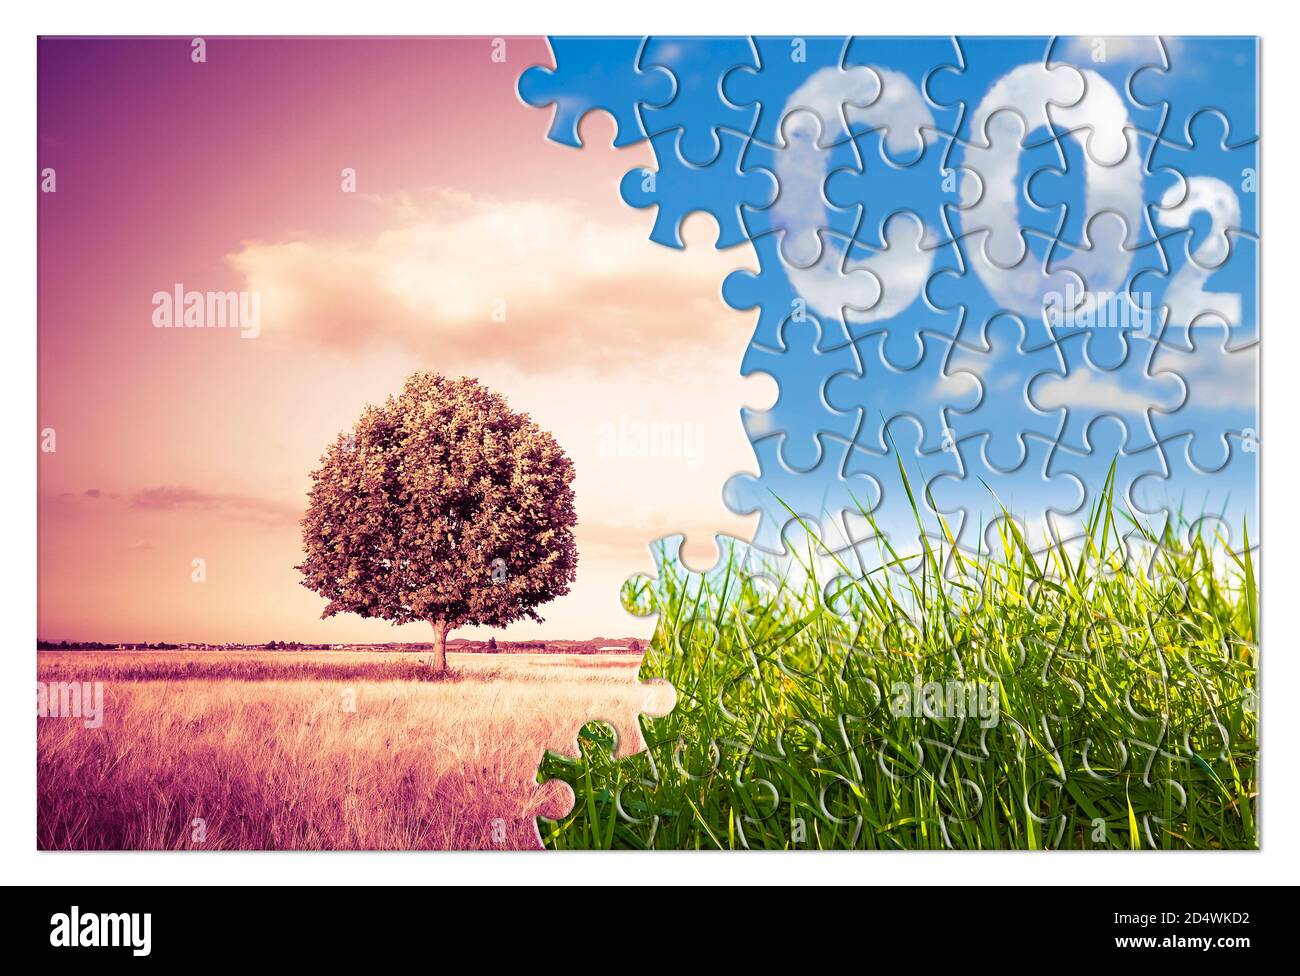 Reduktion der CO2-Präsenz in der Atmosphäre - Puzzle-Konzeptbild gegen ein grünes Wildgras mit einem isolierten Baum in einem Weizenfeld. Stockfoto